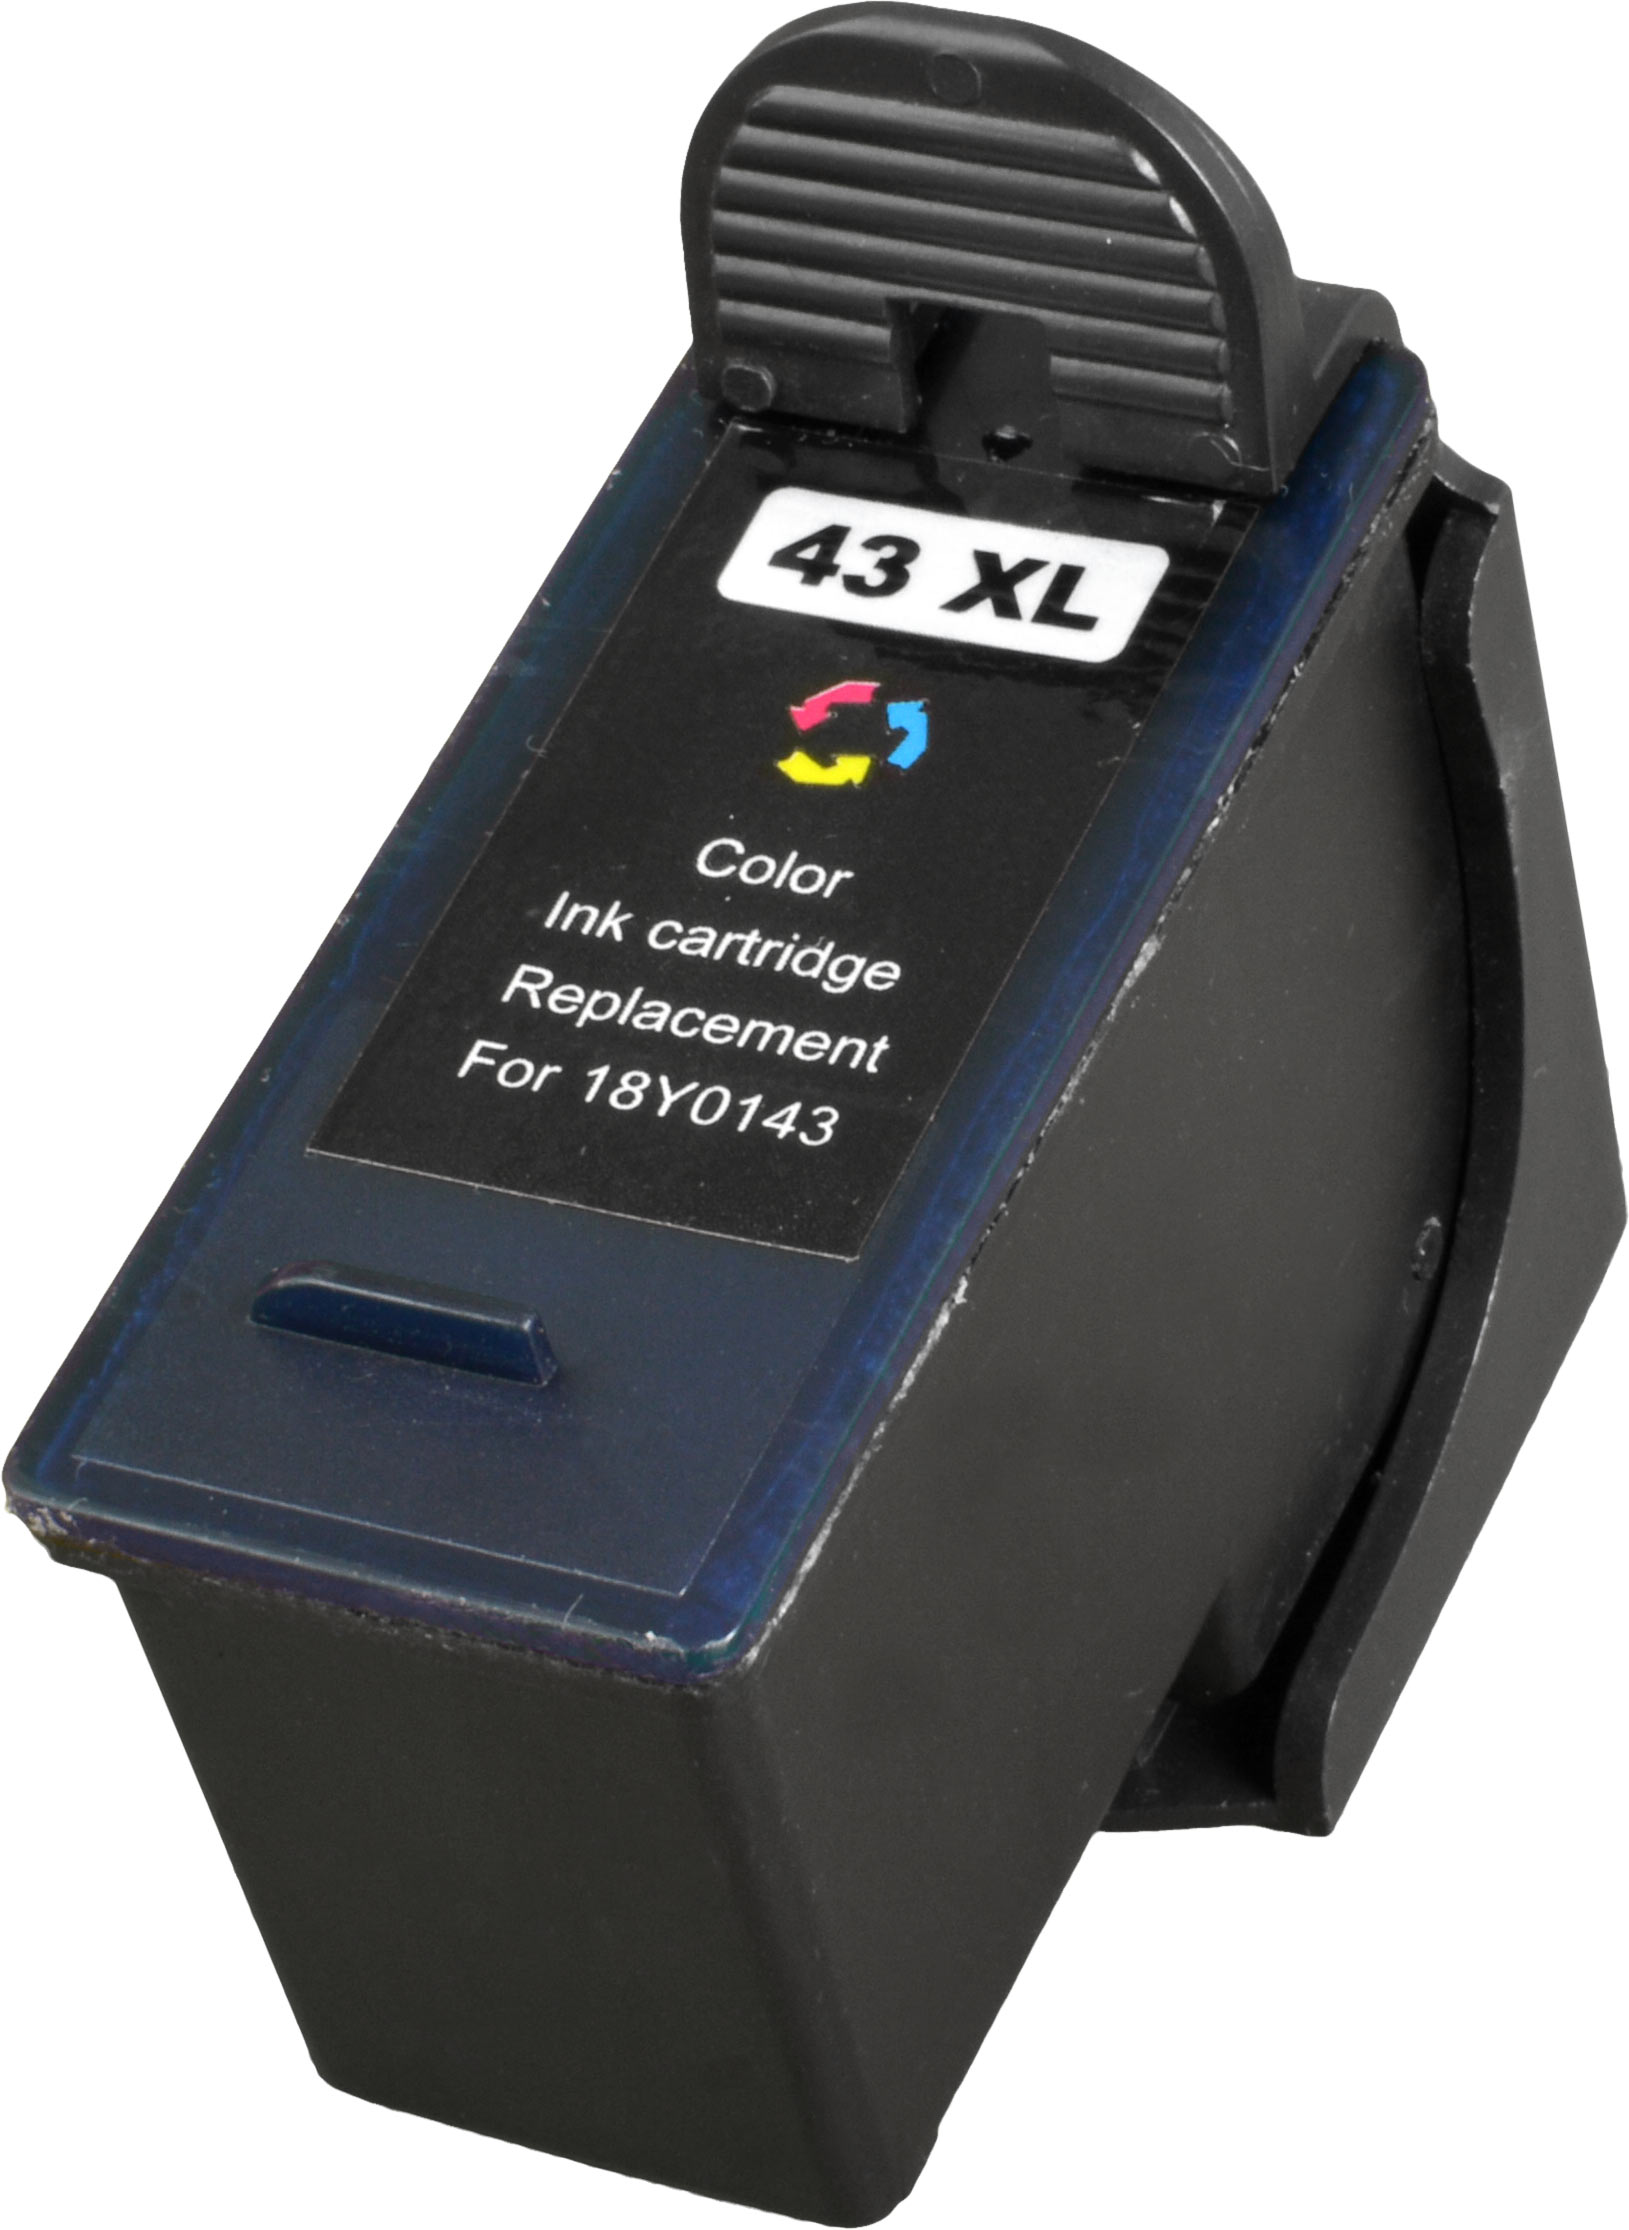 Ampertec Tinte für Lexmark 18YX143E  43XL  3-farbig